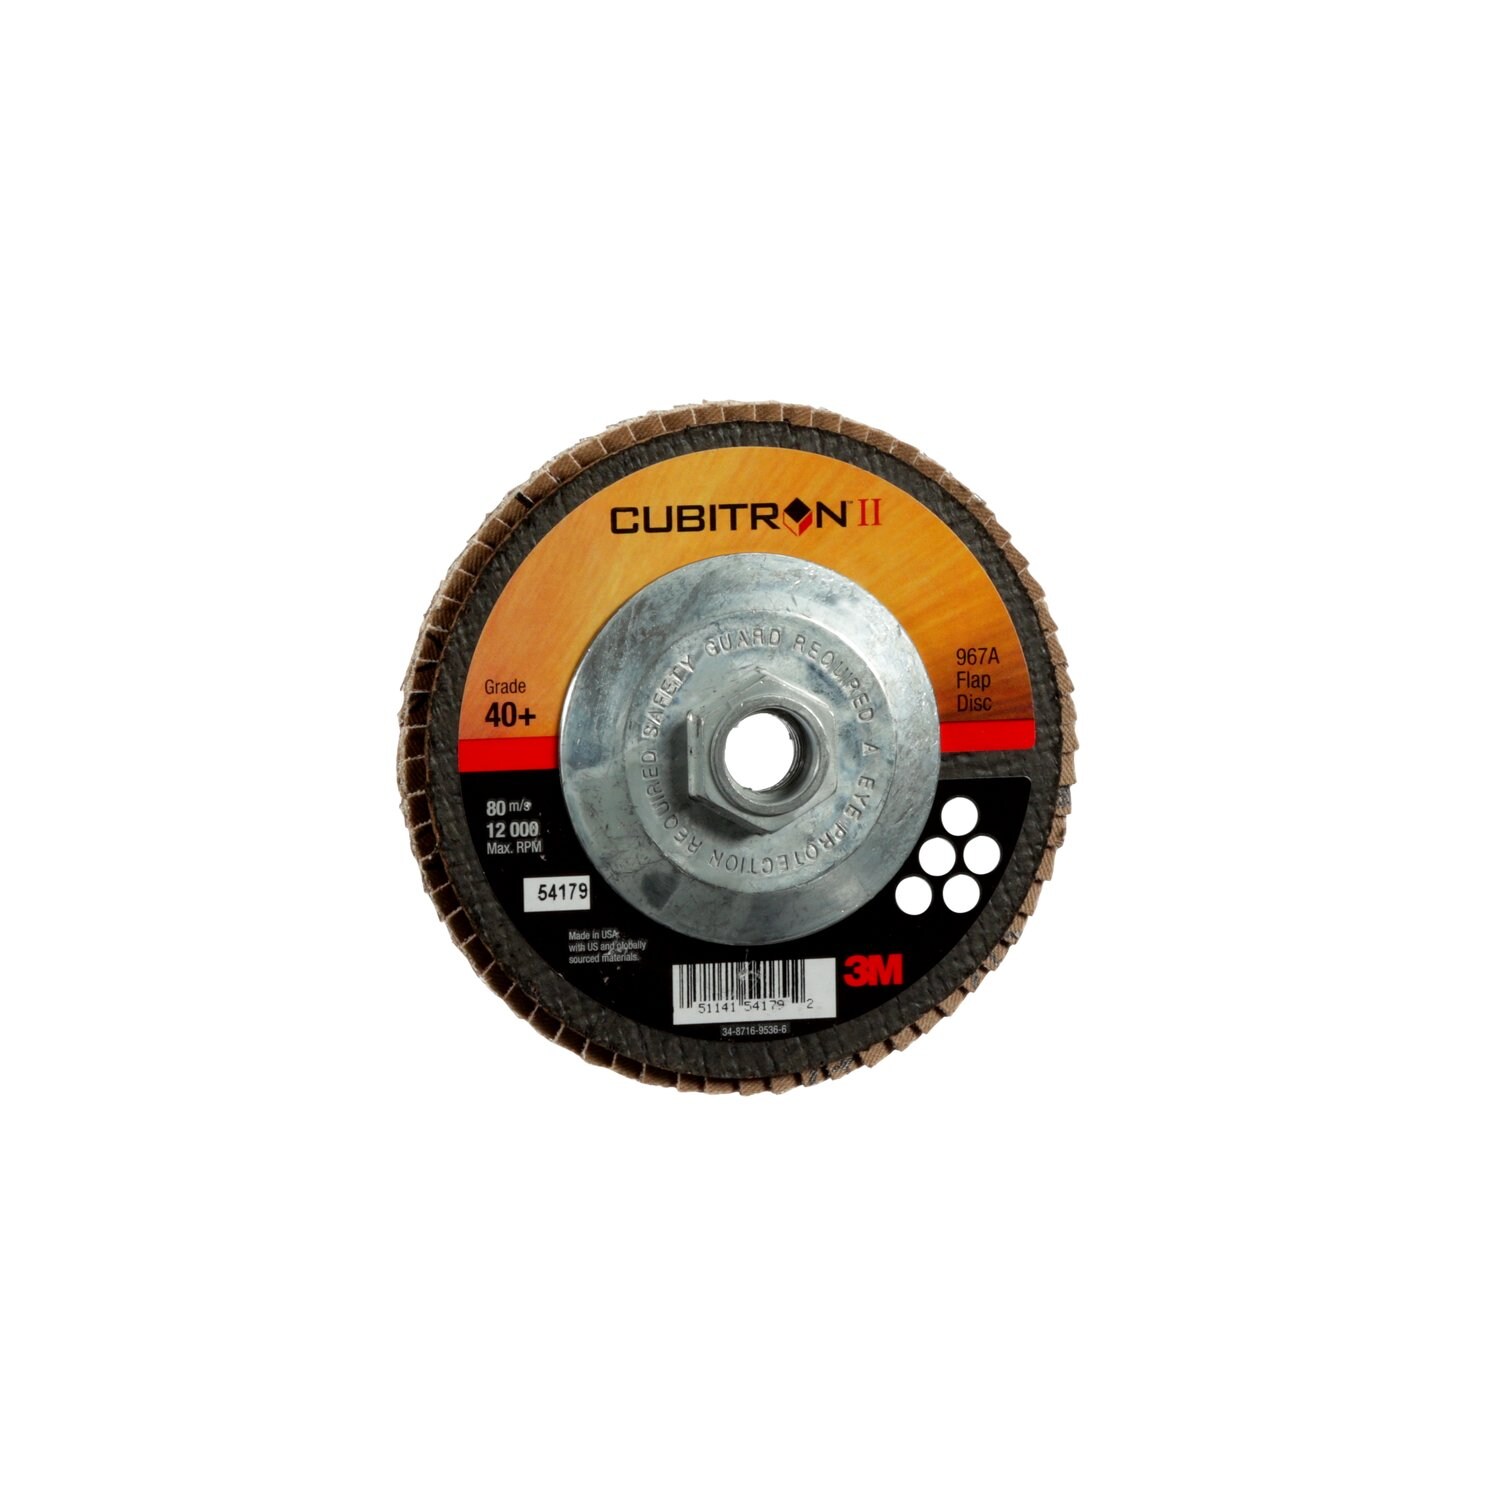 7100049189 - 3M Cubitron II Flap Disc 967A, 40+, T27, 5 in x 5/8"-11, 10 ea/Case